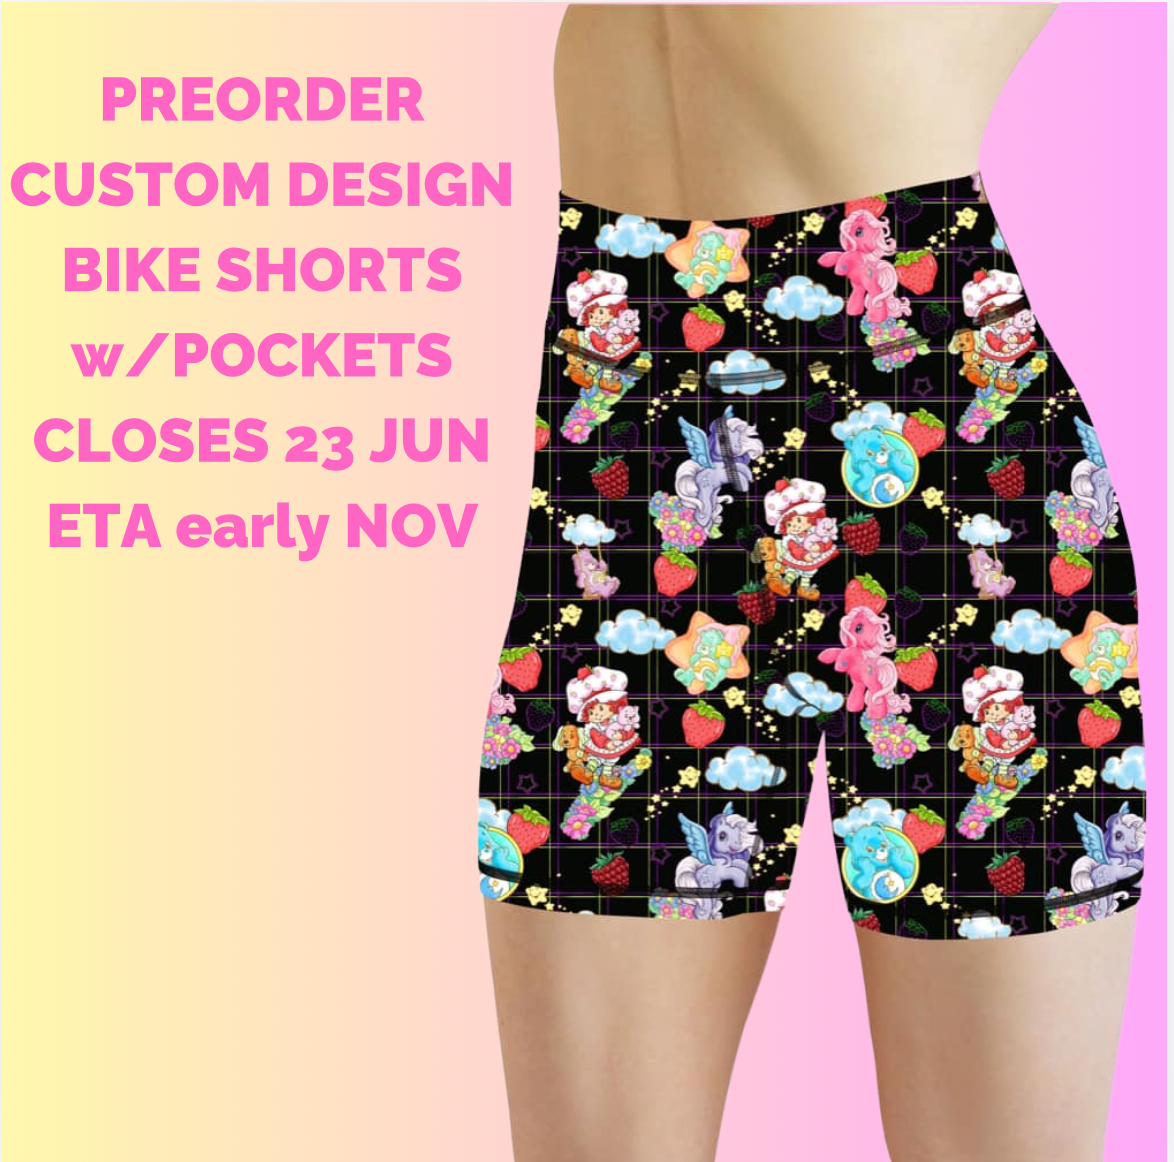 Preorder Custom Bike Shorts - Closes 23 Jun